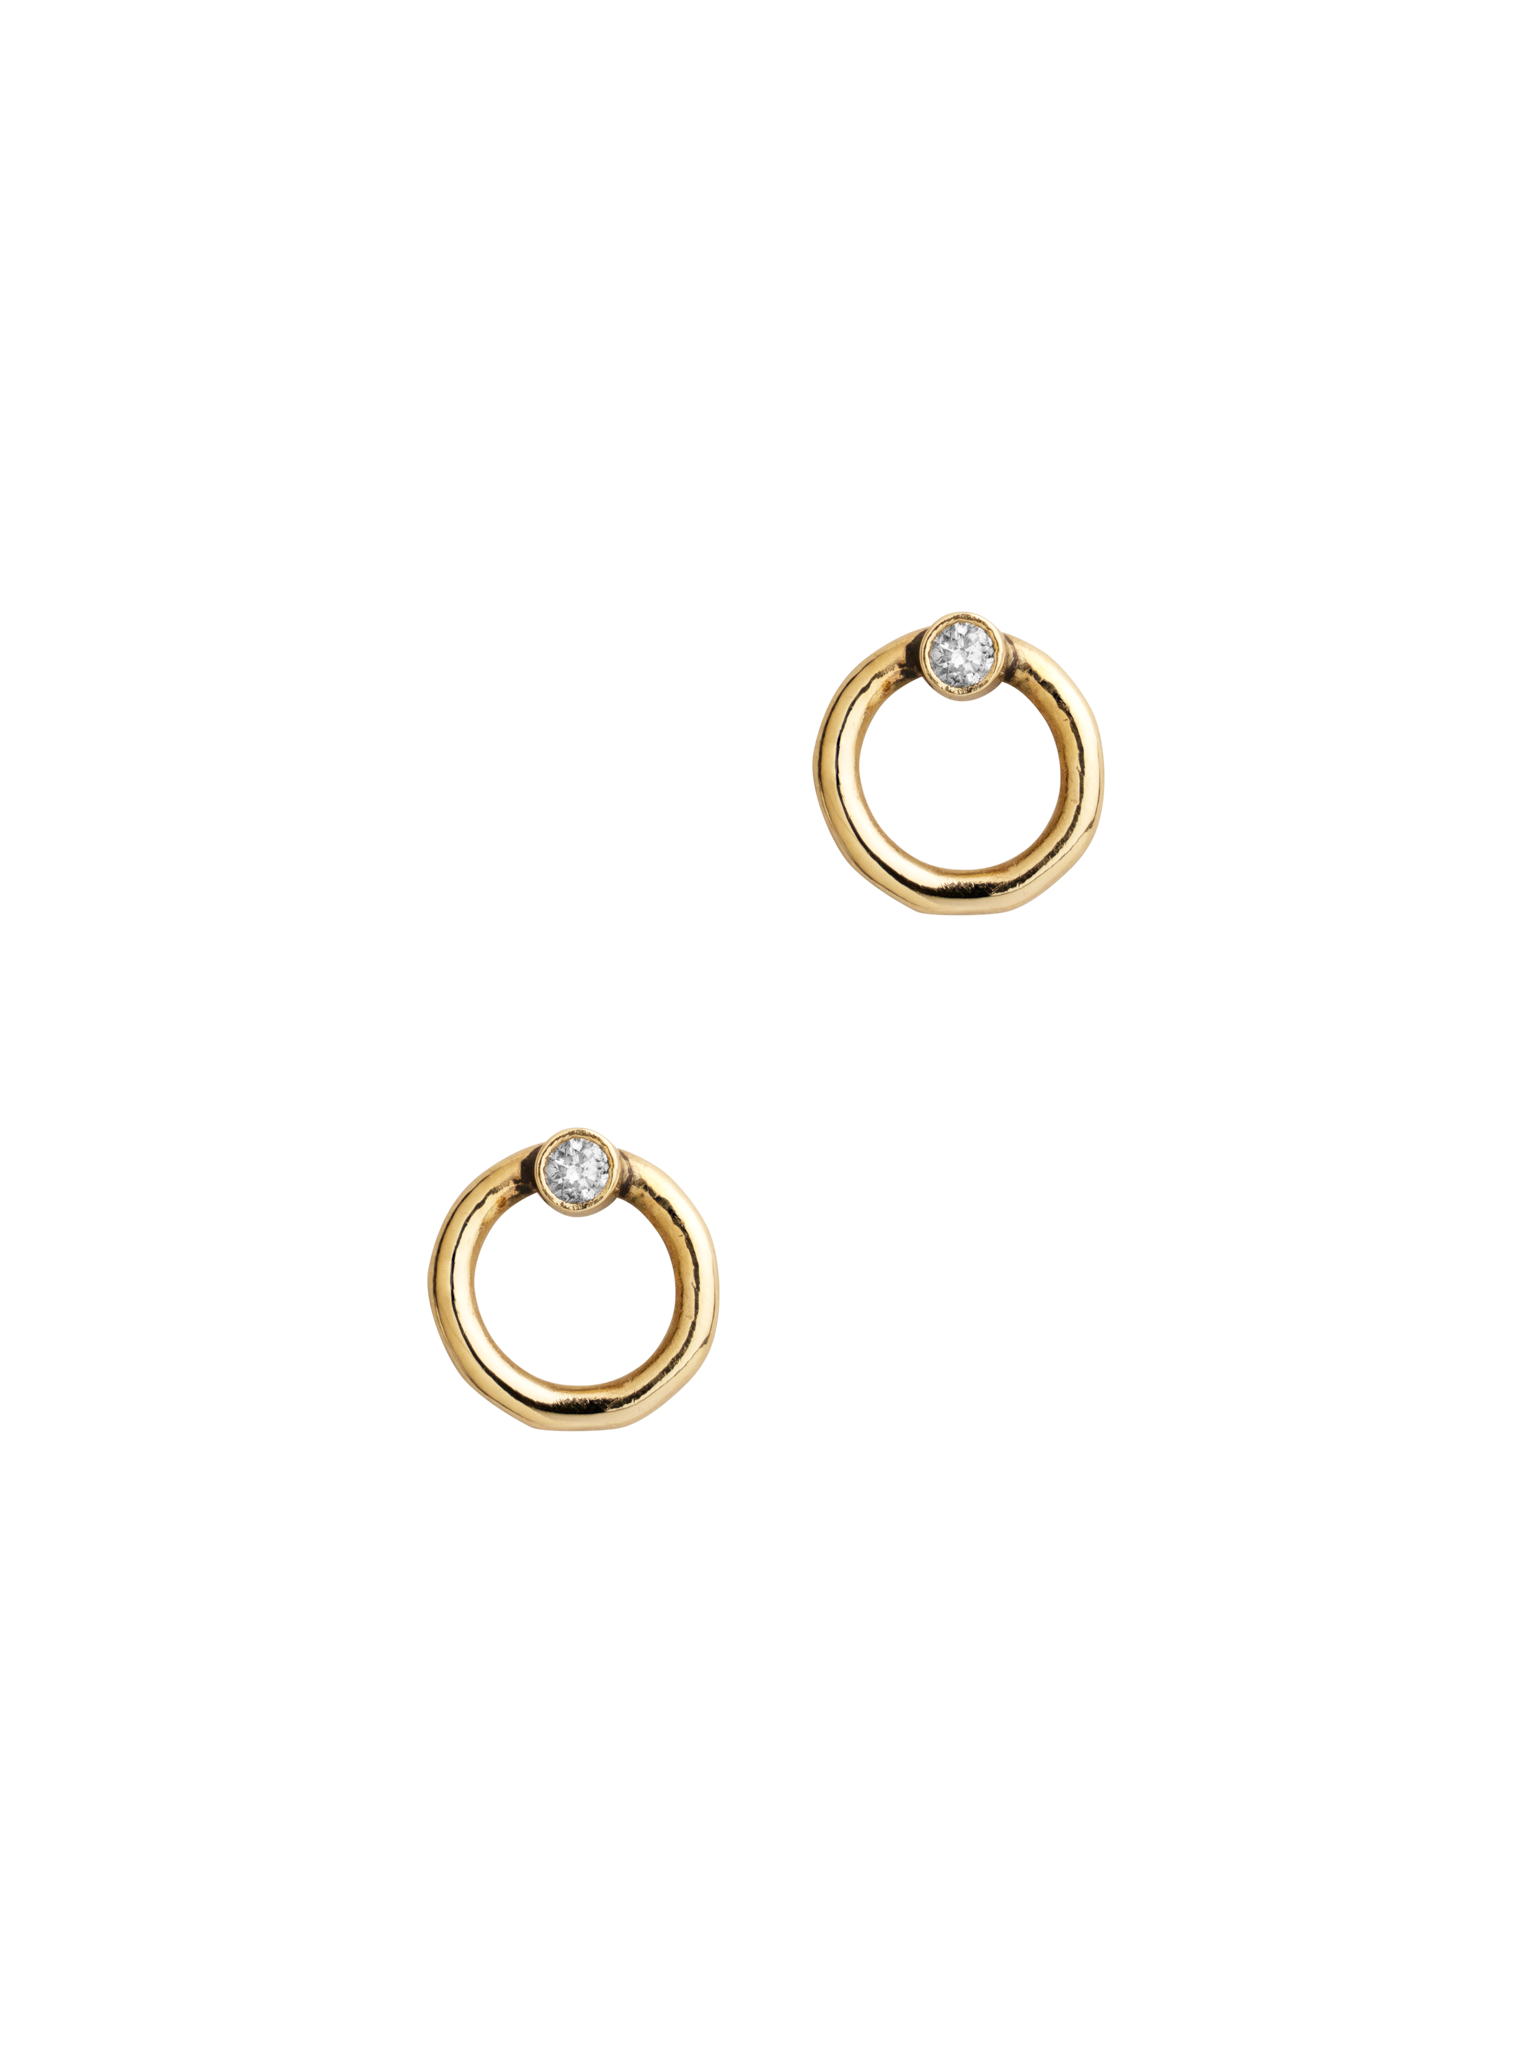 Diamond circle stud earrings 